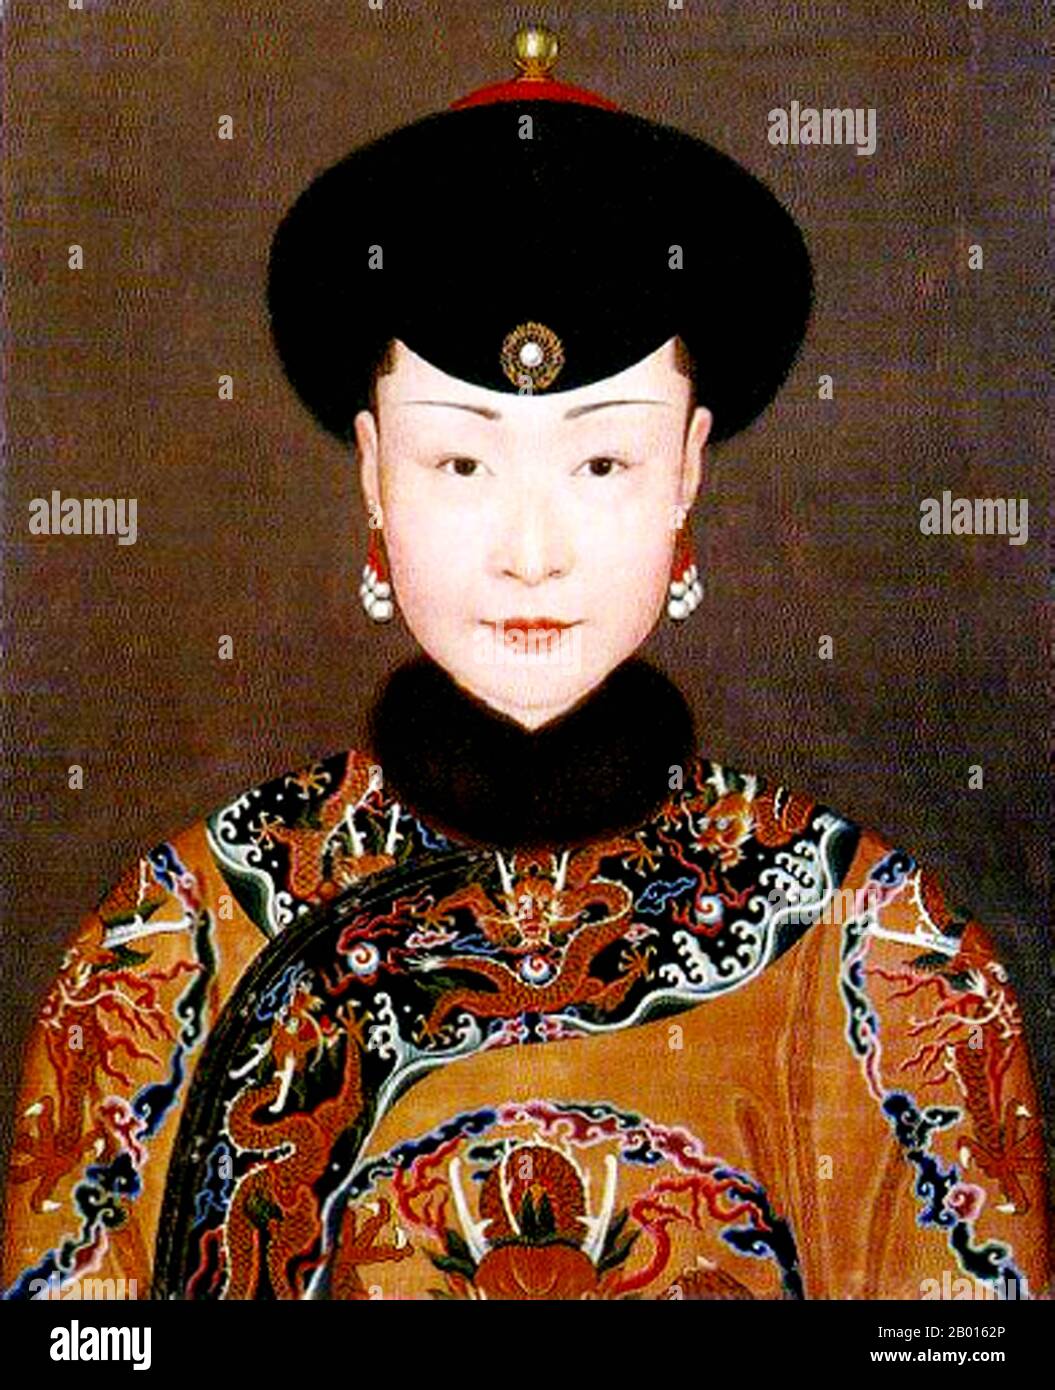 Cina: Imperatrice Nara (11 marzo 1718 - 19 agosto 1766), seconda consorte dell'imperatore Qianlong. Dipinto a scroll appeso di Jean Denis Attiret (1702-1768), c.. 1750. Imperatrice Nara del Clan Nara fu la seconda consorte imperatrice dell'imperatore Qianlong. Originariamente era una consorte imperiale, ma fu elevata dopo la morte dell'imperatrice Xiaoxianchun nel 1748. Accompagnò l'imperatore in vari viaggi, cacce e cerimonie. Alla fine perse la sua autorità come capo dell'harem imperiale nel 1765, forse per il taglio scandaloso dei capelli, anche se non fu mai ufficialmente deposta. Foto Stock